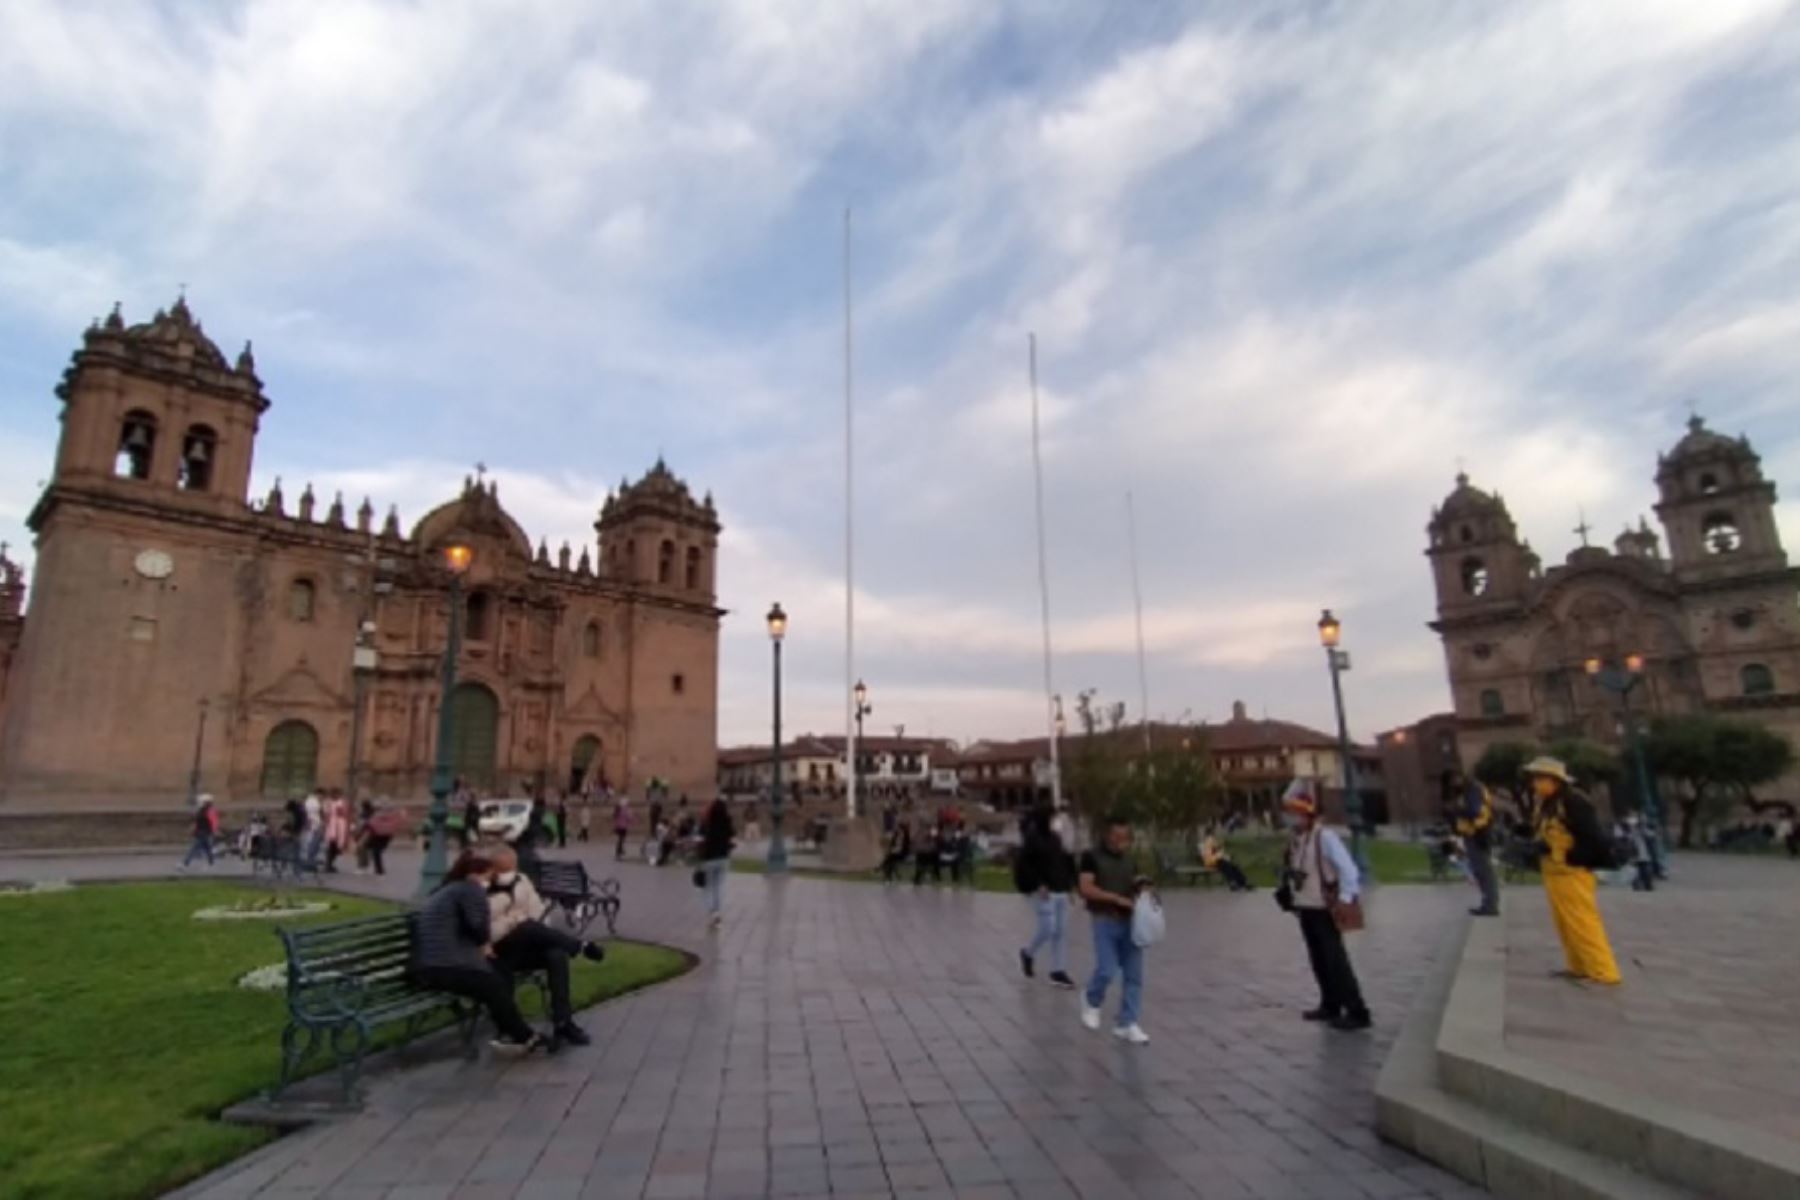 El regocijo está asegurado al visitar Cusco, la milenaria capital del Imperio Inca ubicada al sur del Perú, cuyas construcciones monumentales cautivan los sentidos por su impresionante belleza paisajística que conjuga historia, cultura, arte y gran conocimiento de ingeniería y arquitectura que cautivan a todos. Foto: ANDINA/Difusión.